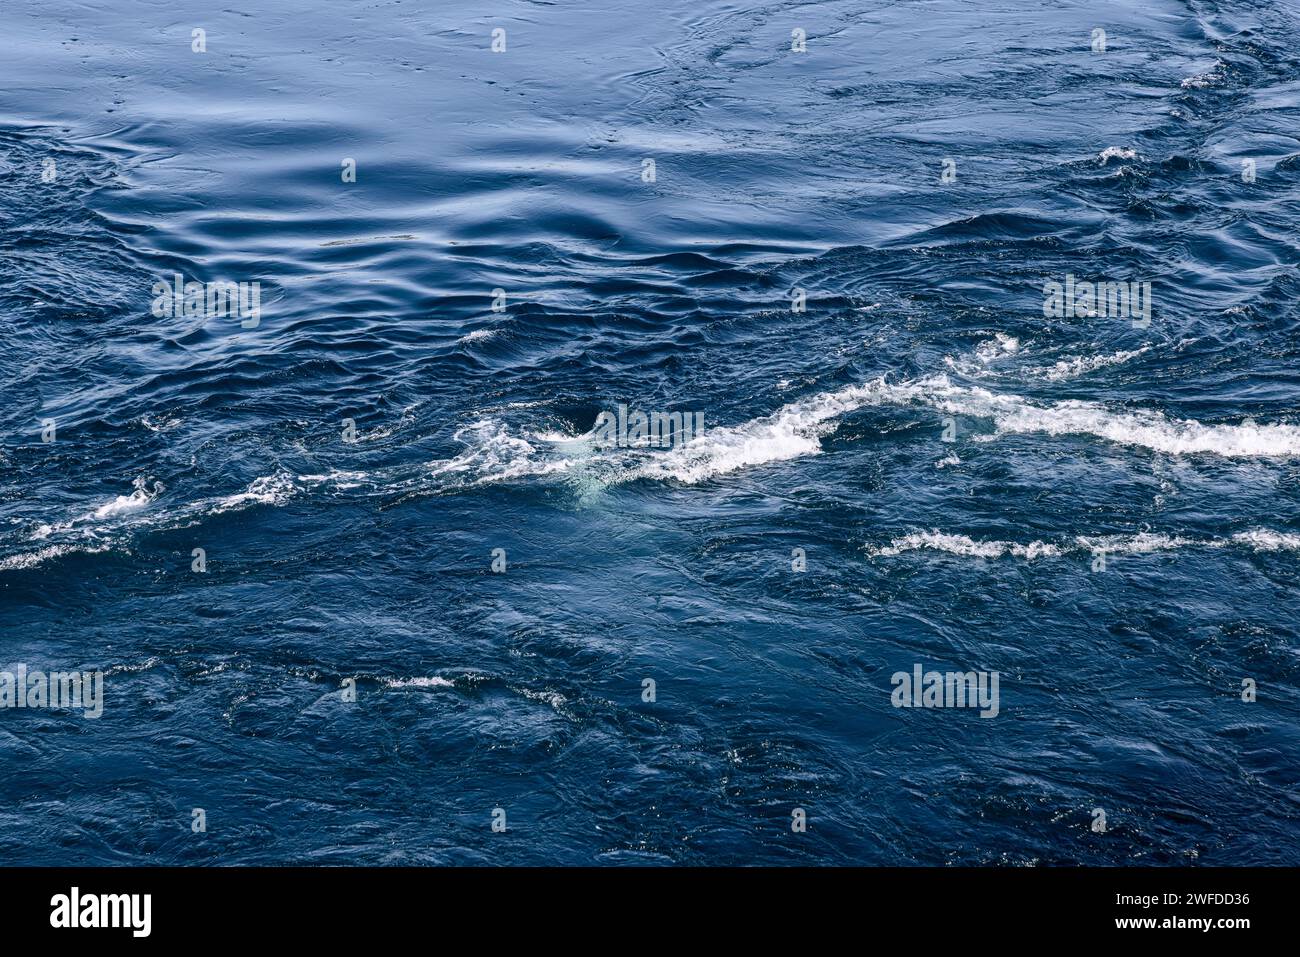 Le formidabili correnti di marea di Saltstraumen si scolpiscono nell'acqua, creando una splendida superficie strutturata di vortici e vortici ipnotici Foto Stock